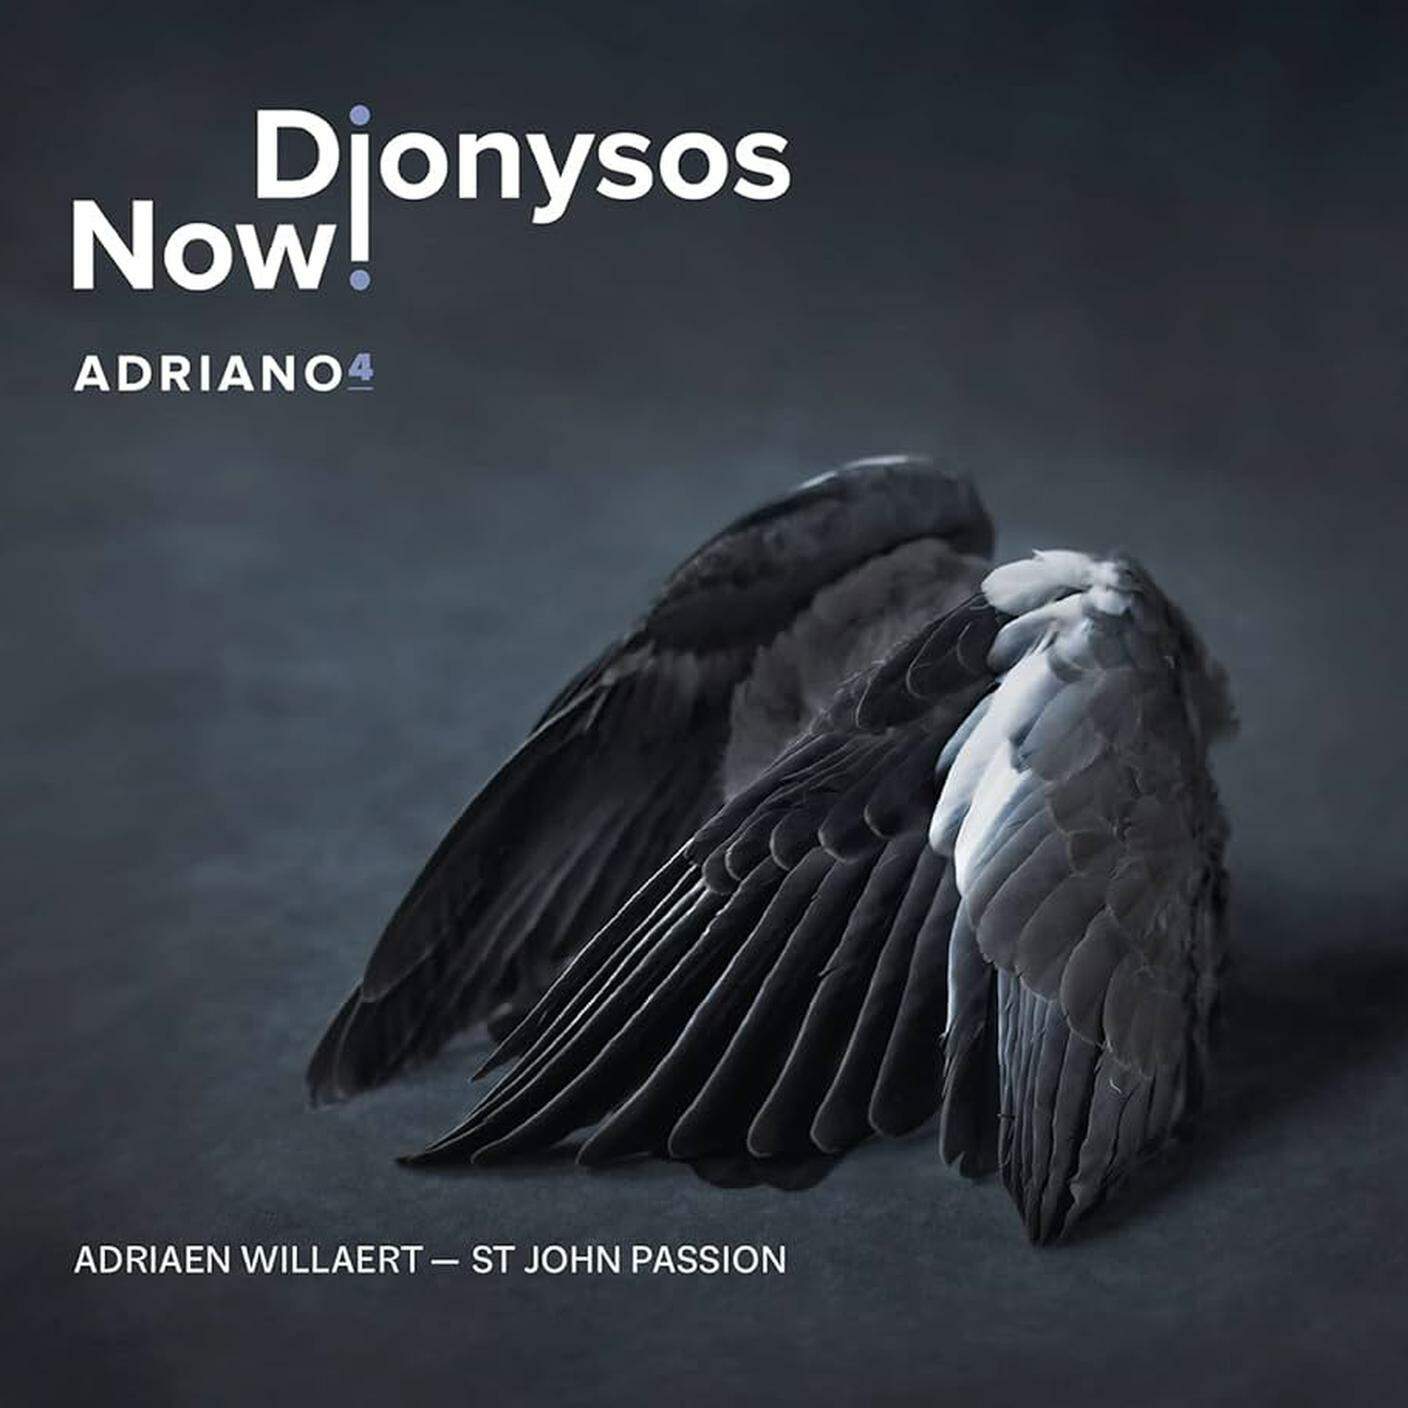 Dionysos Now! "Adriano", EVIL PENGUIN (dettaglio copertina)